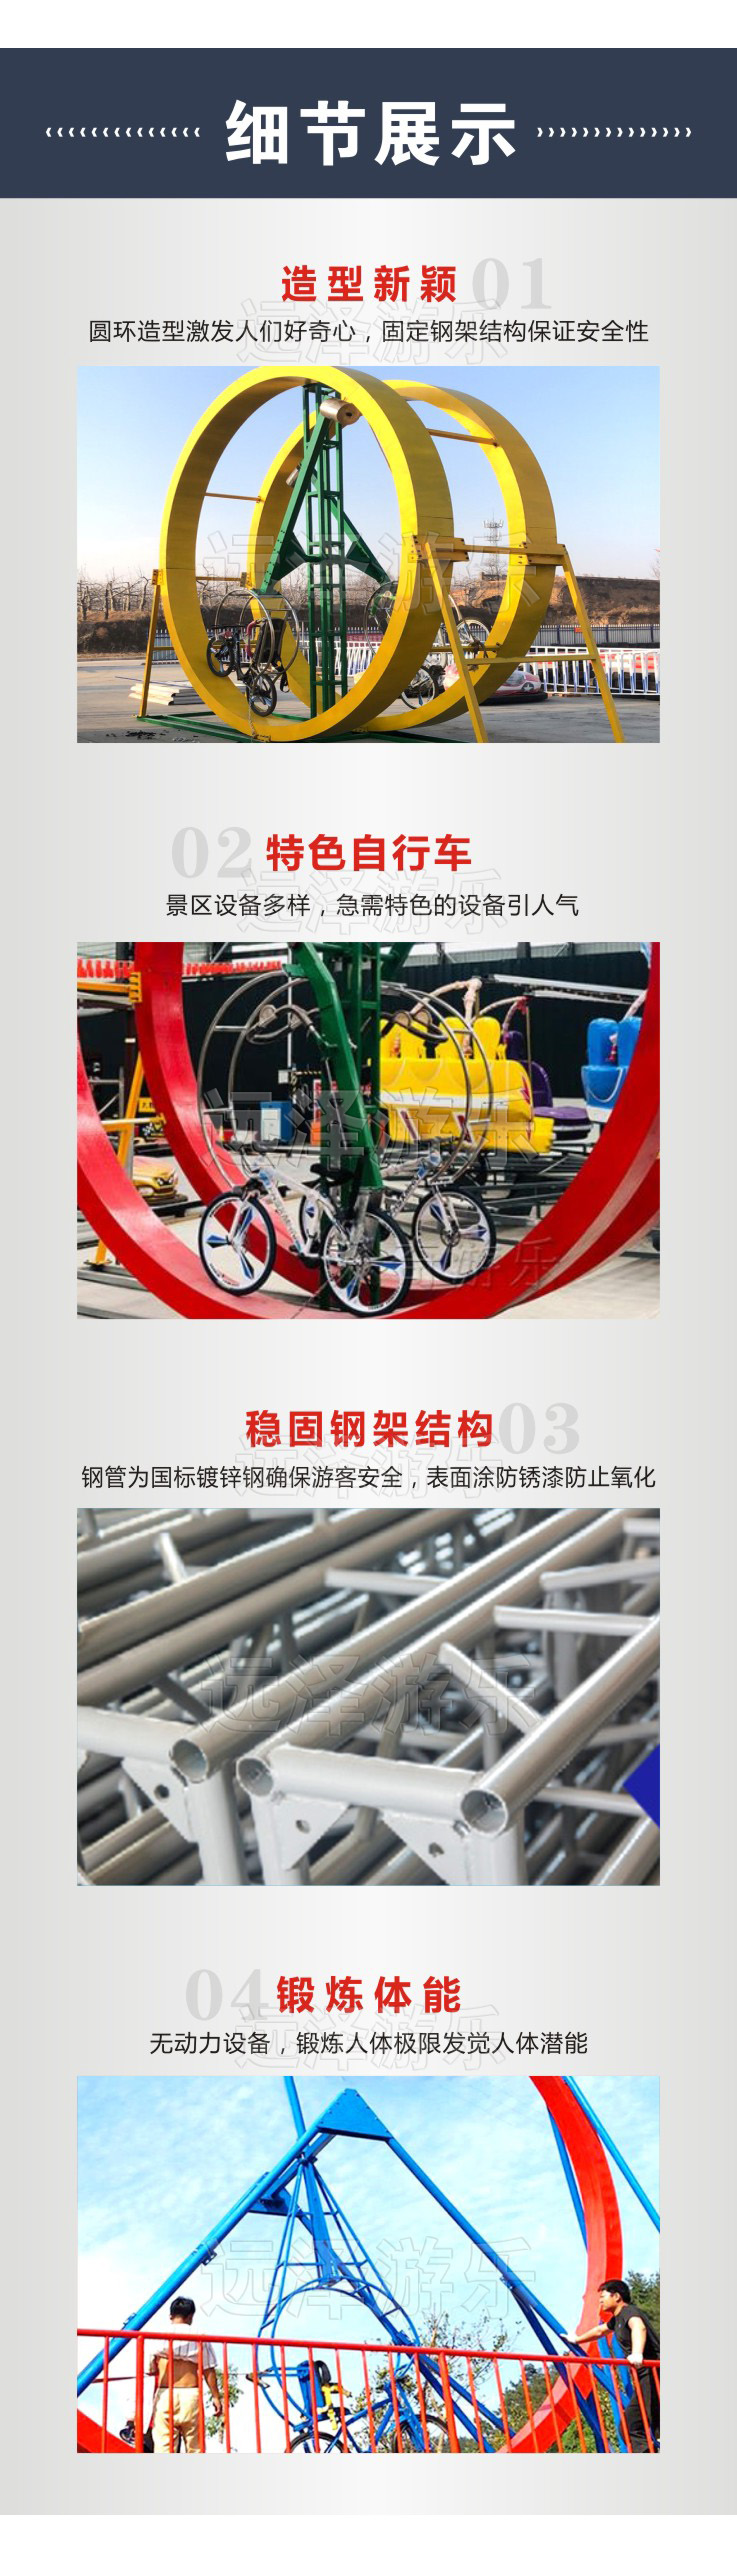 德阳网红自行车游乐设备 360度圆环自行车 农庄游乐设备 5